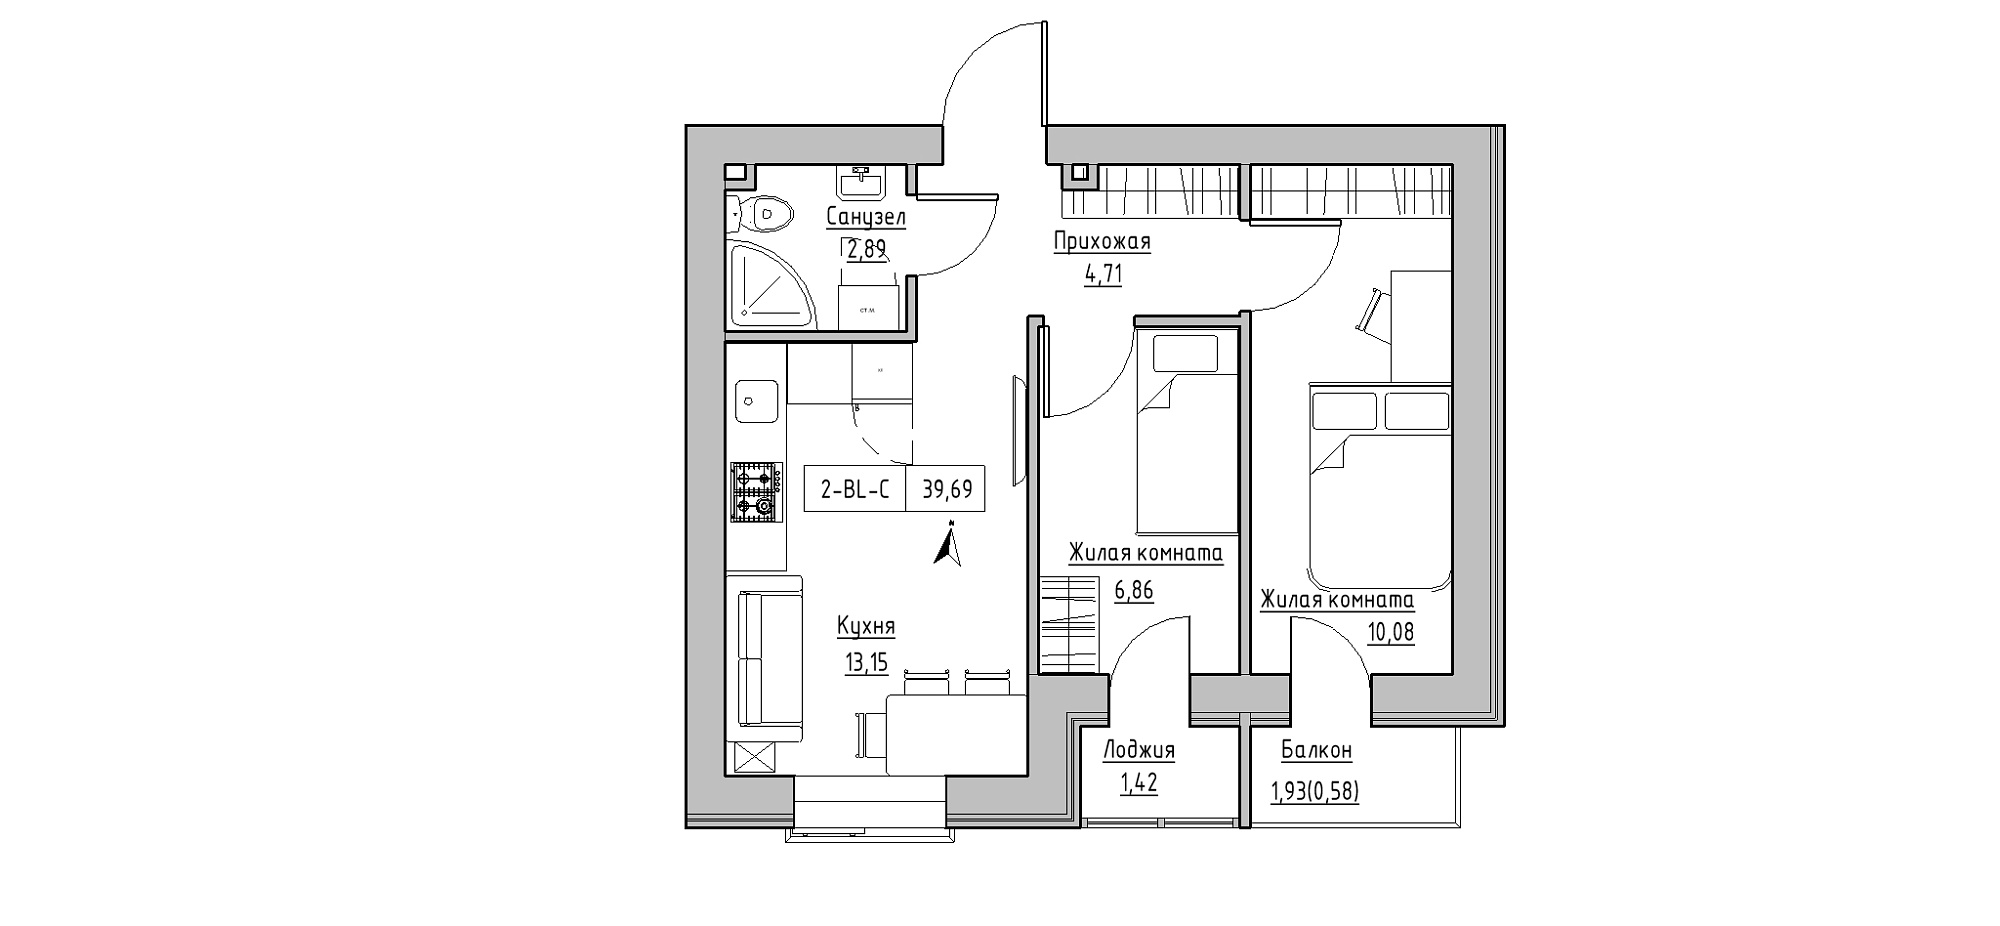 Планування 2-к квартира площею 39.69м2, KS-020-02/0005.